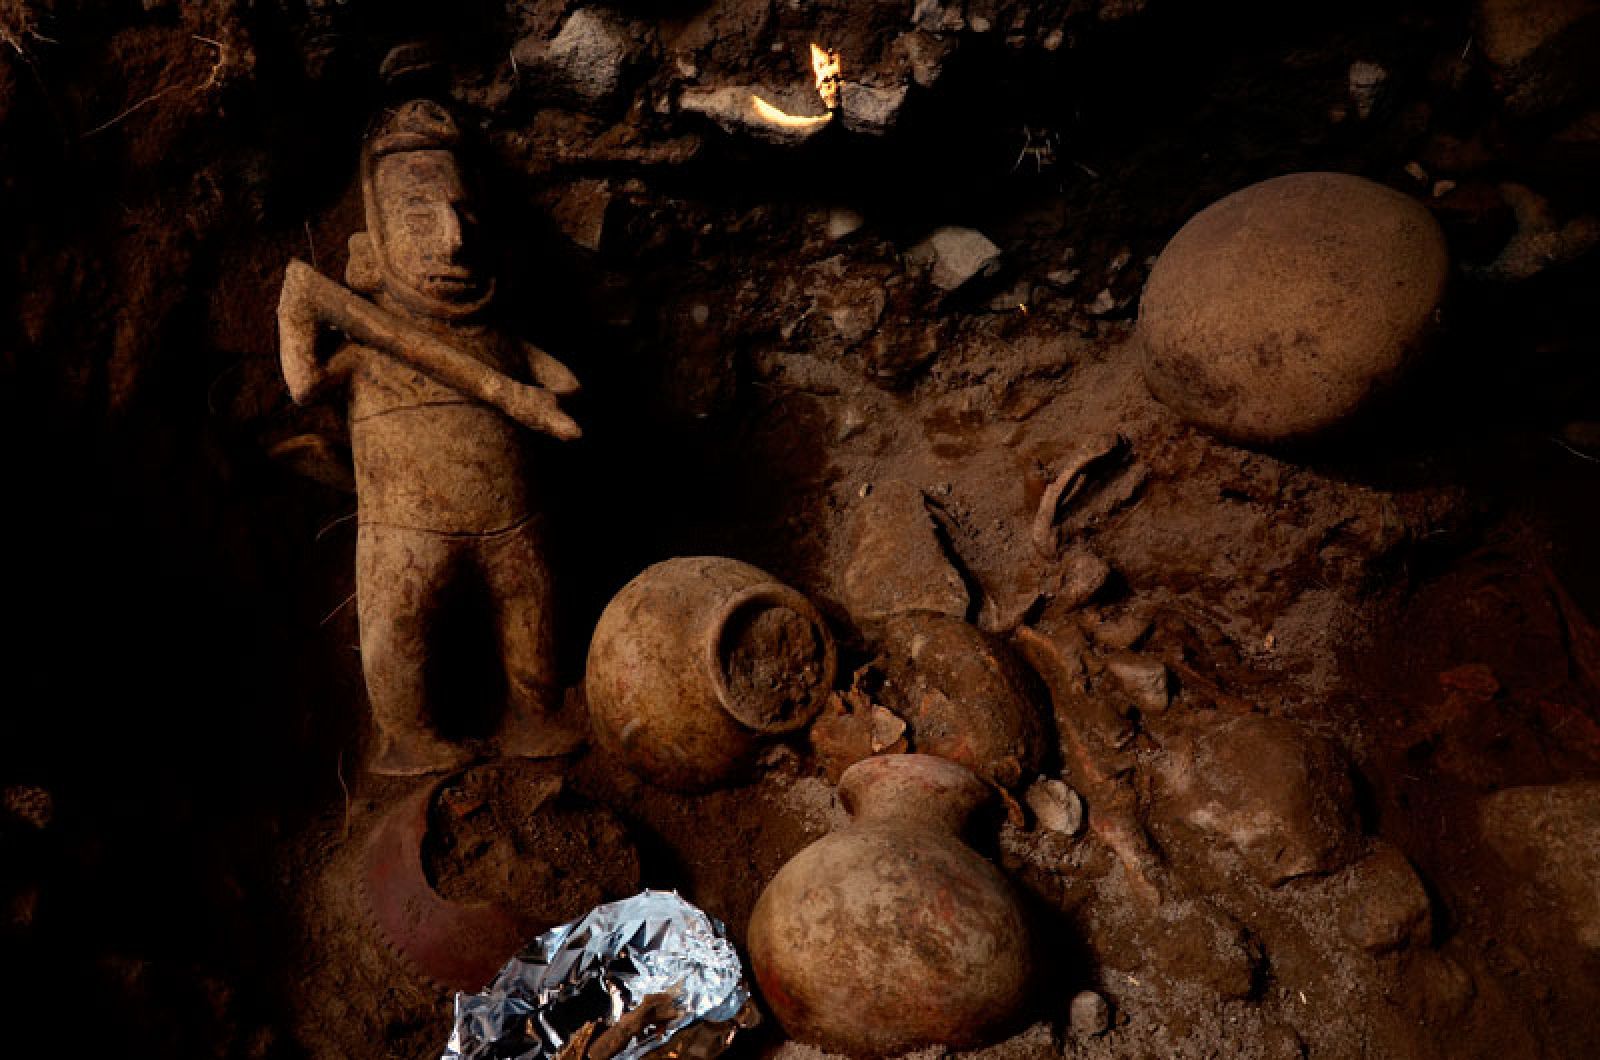 Escultura de un chamán de rostro alargado y arma en mano, junto a vasijas halladas.